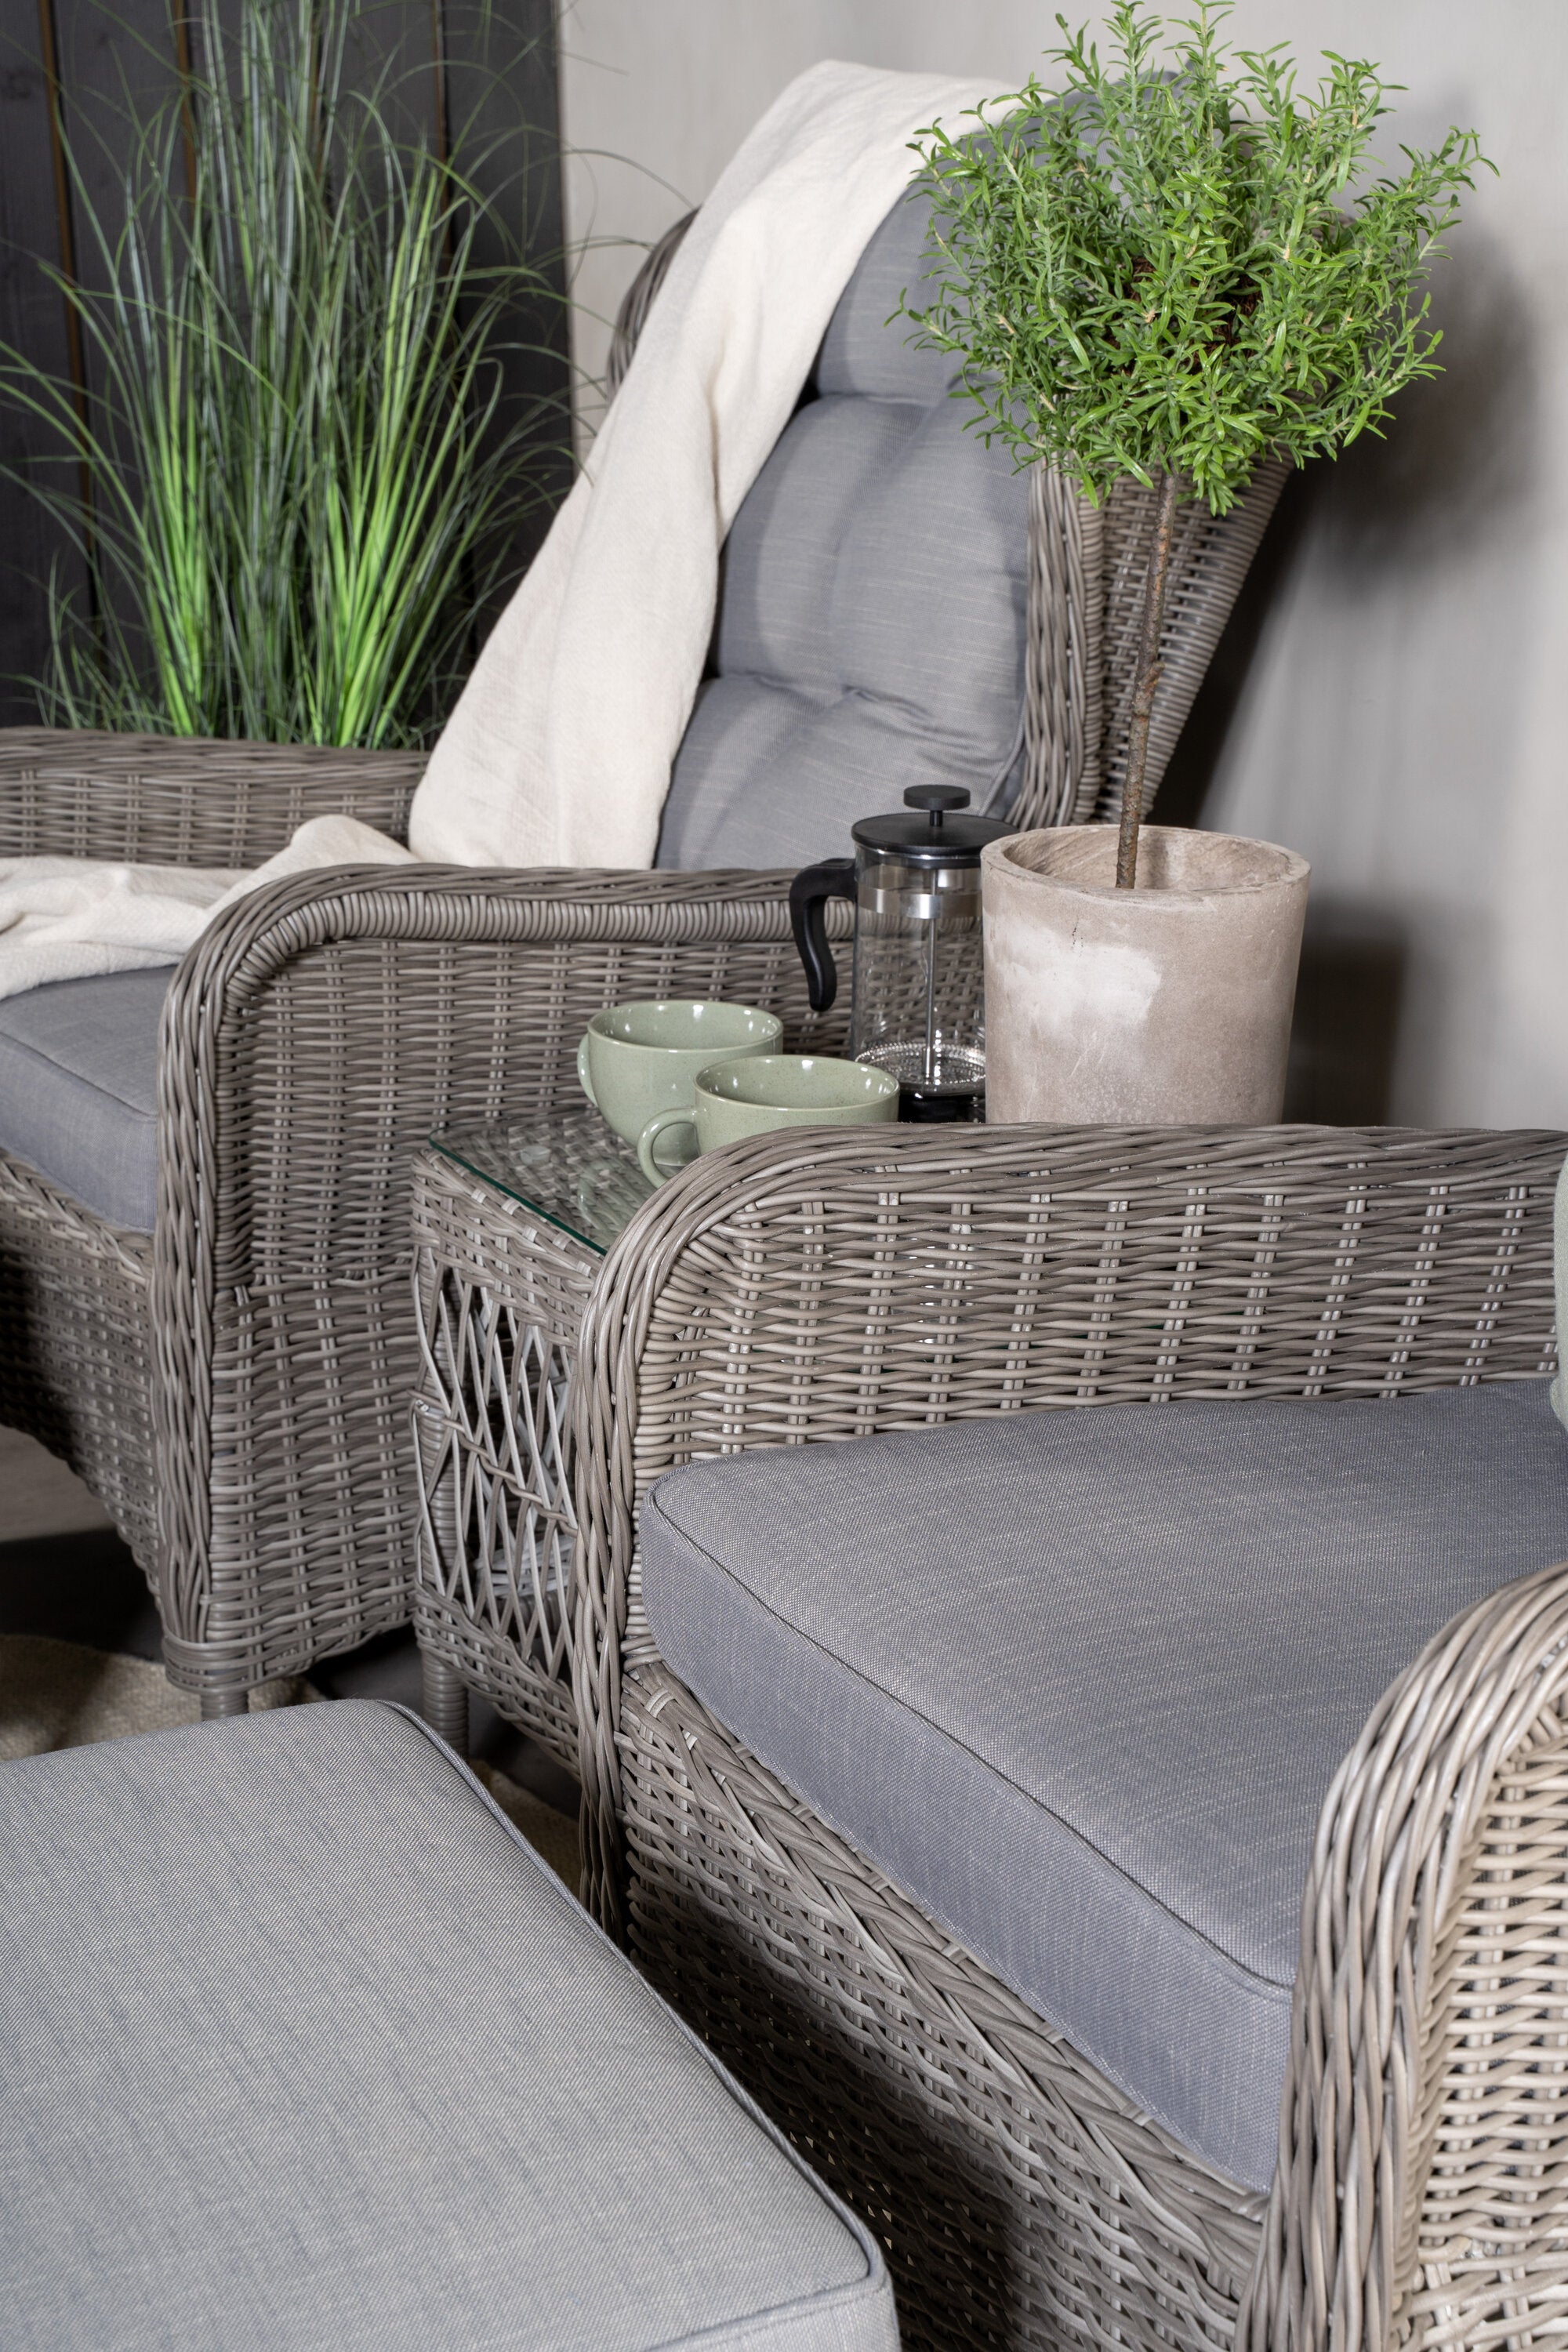 Washington Lounge Outdoorset 52cm in Grau präsentiert im Onlineshop von KAQTU Design AG. Loungeset ist von Venture Home